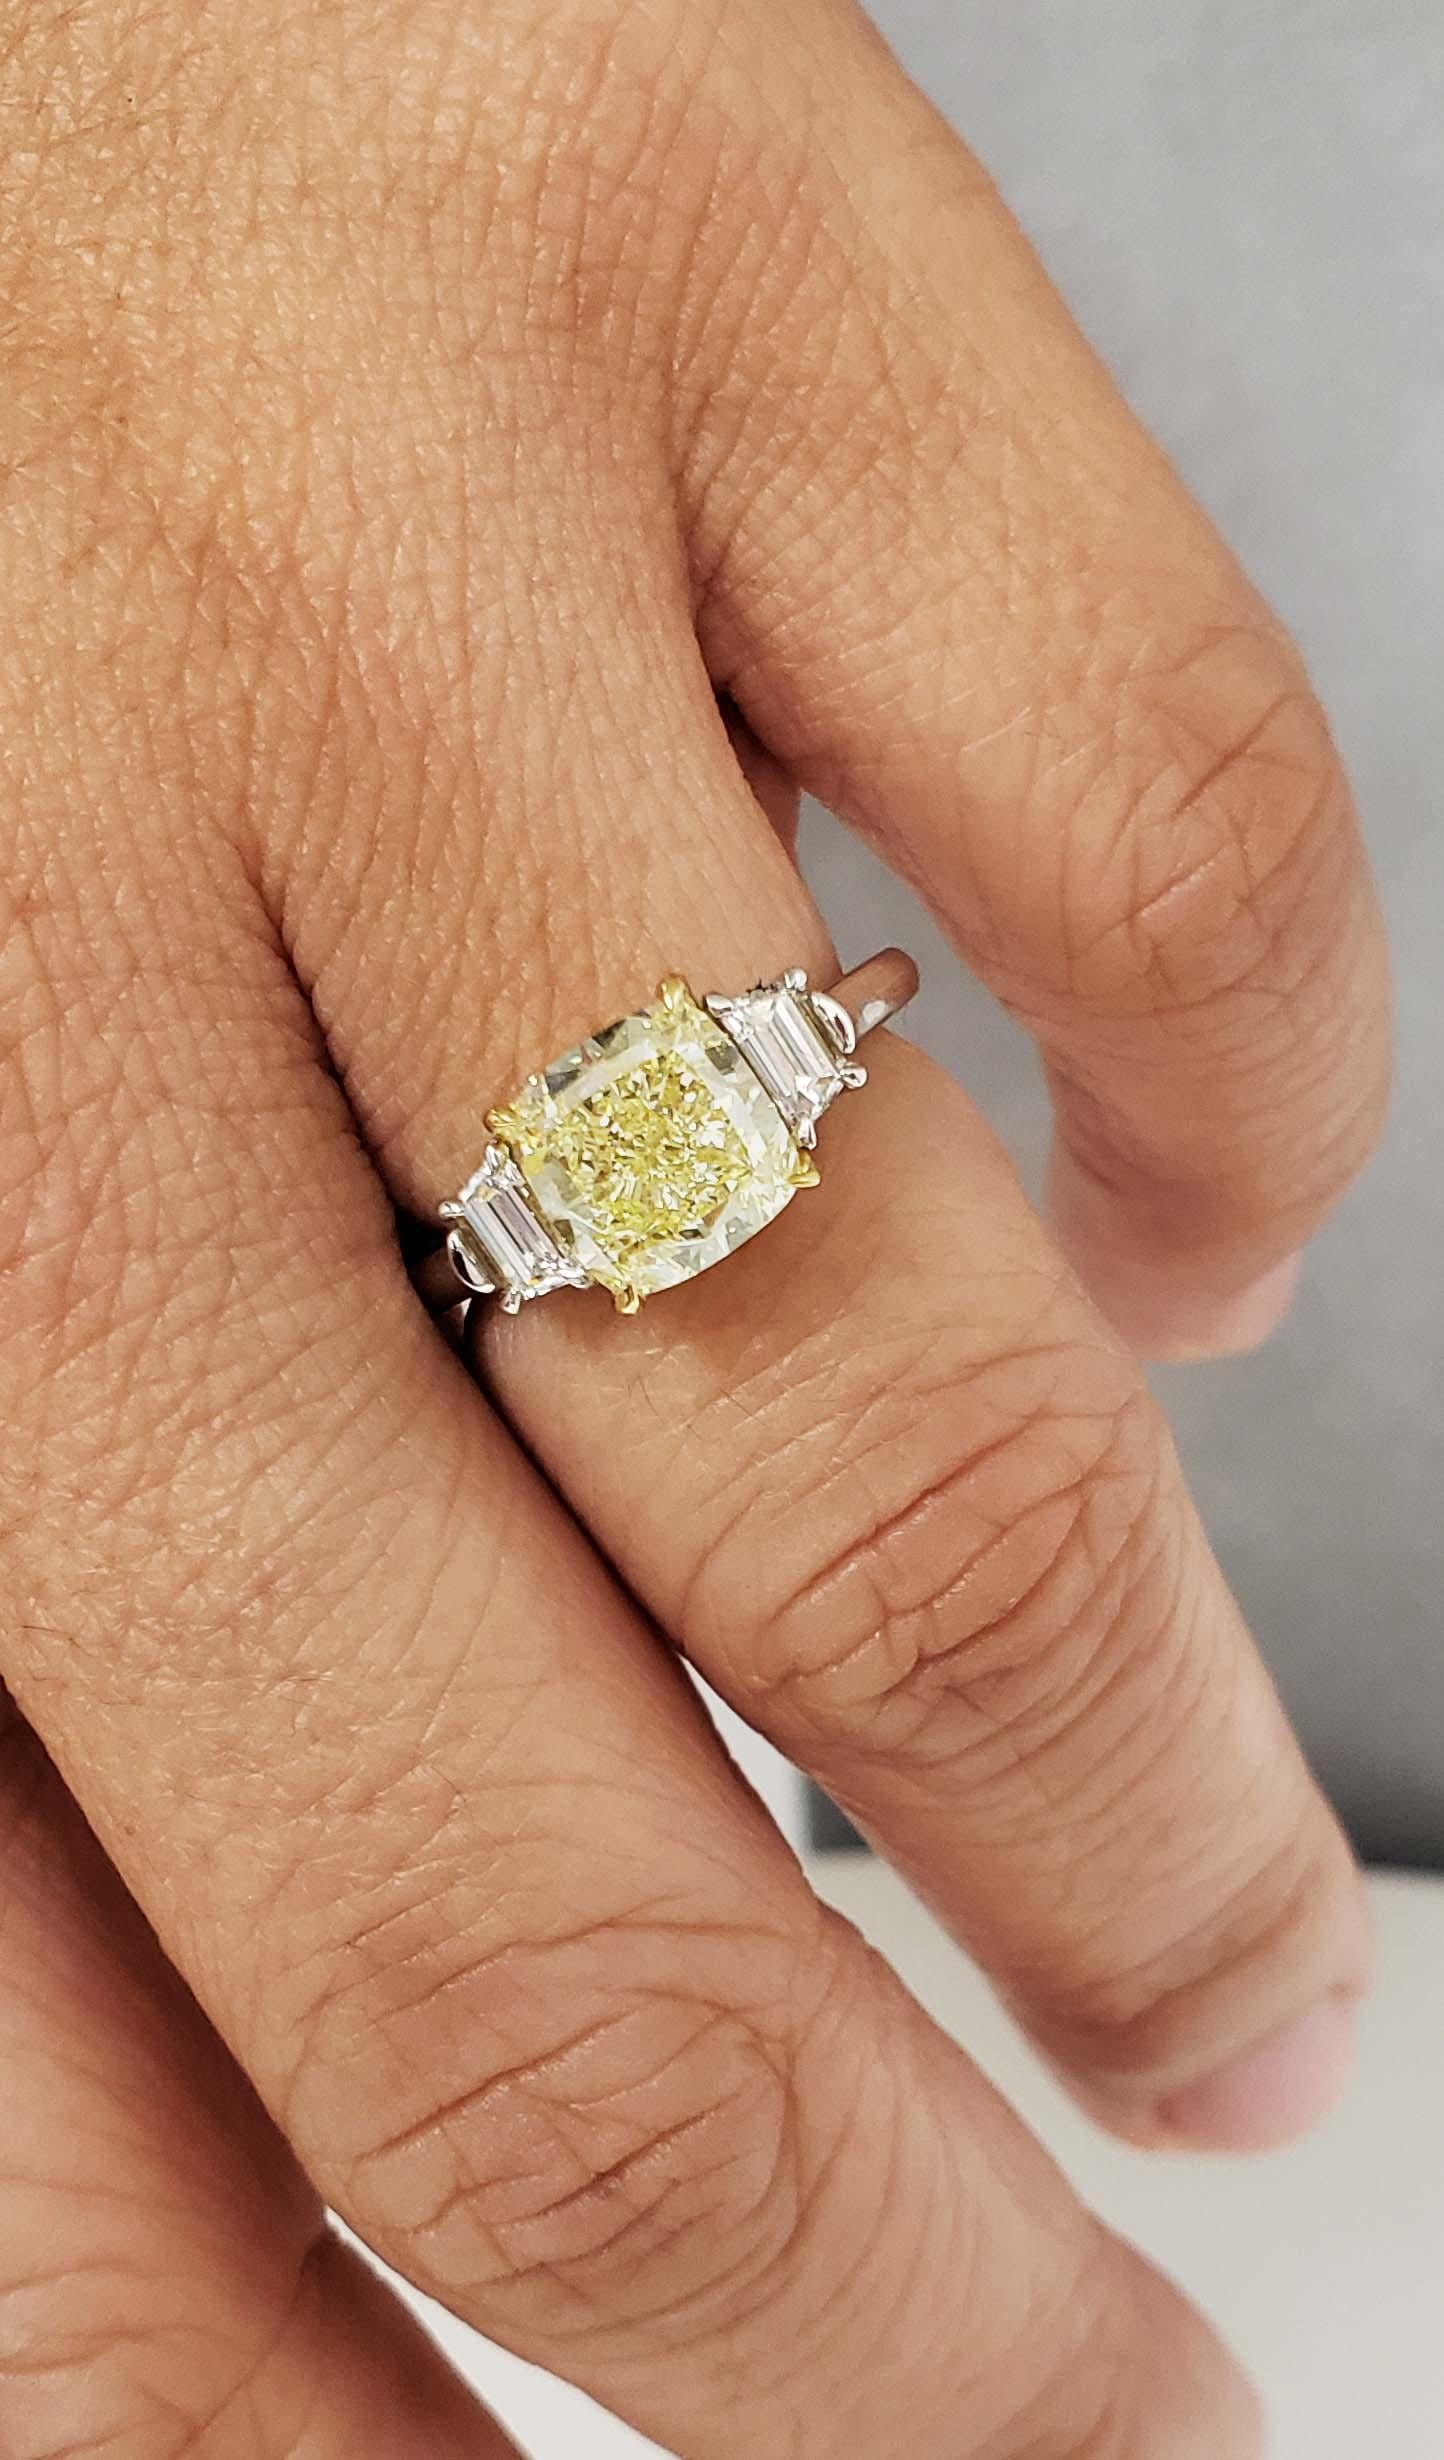 3ct yellow diamond ring